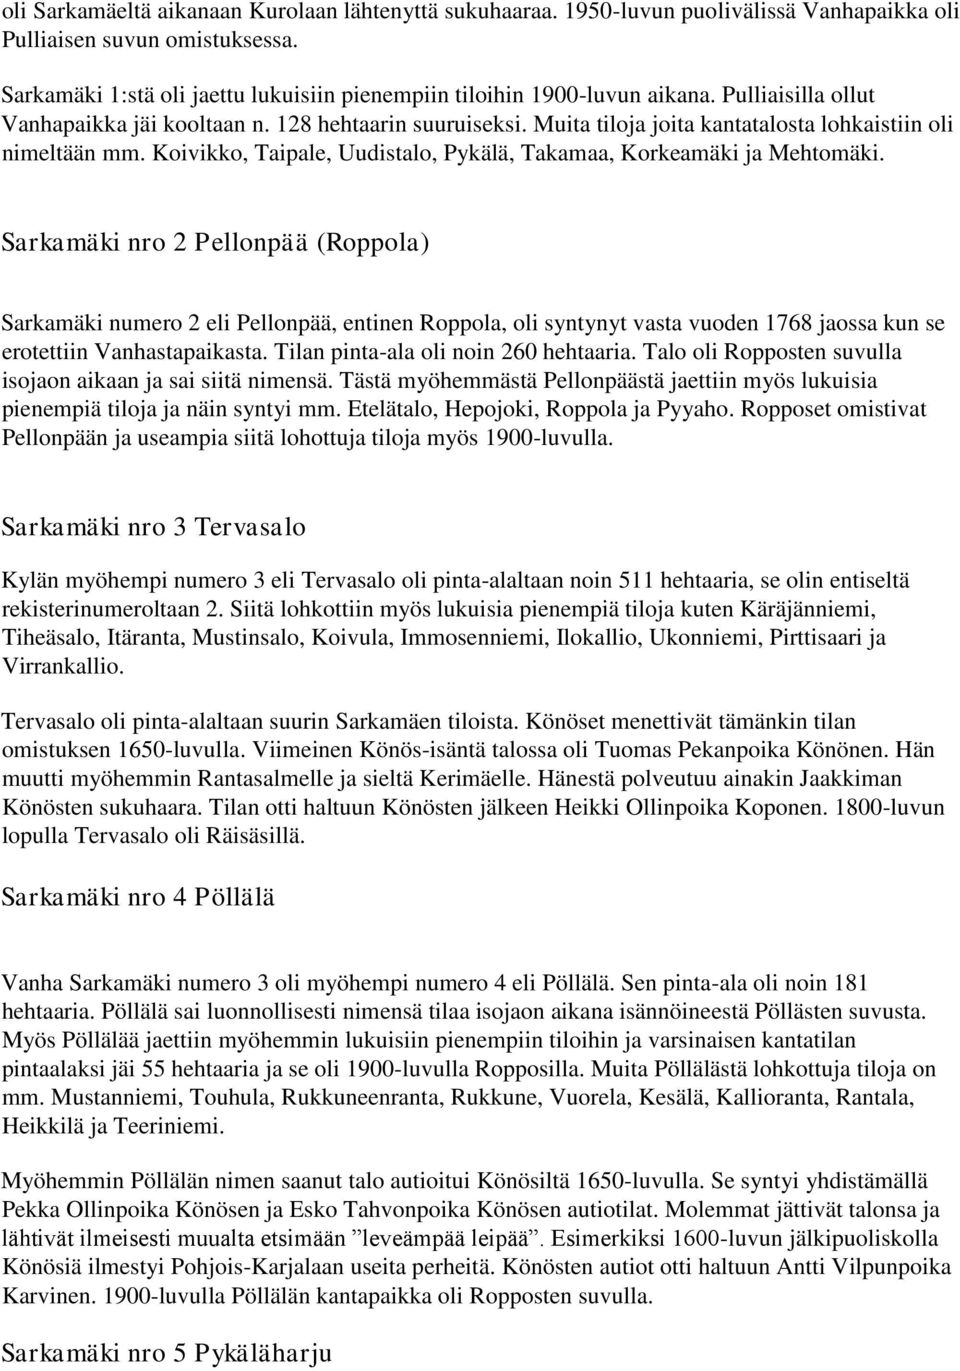 Muita tiloja joita kantatalosta lohkaistiin oli nimeltään mm. Koivikko, Taipale, Uudistalo, Pykälä, Takamaa, Korkeamäki ja Mehtomäki.